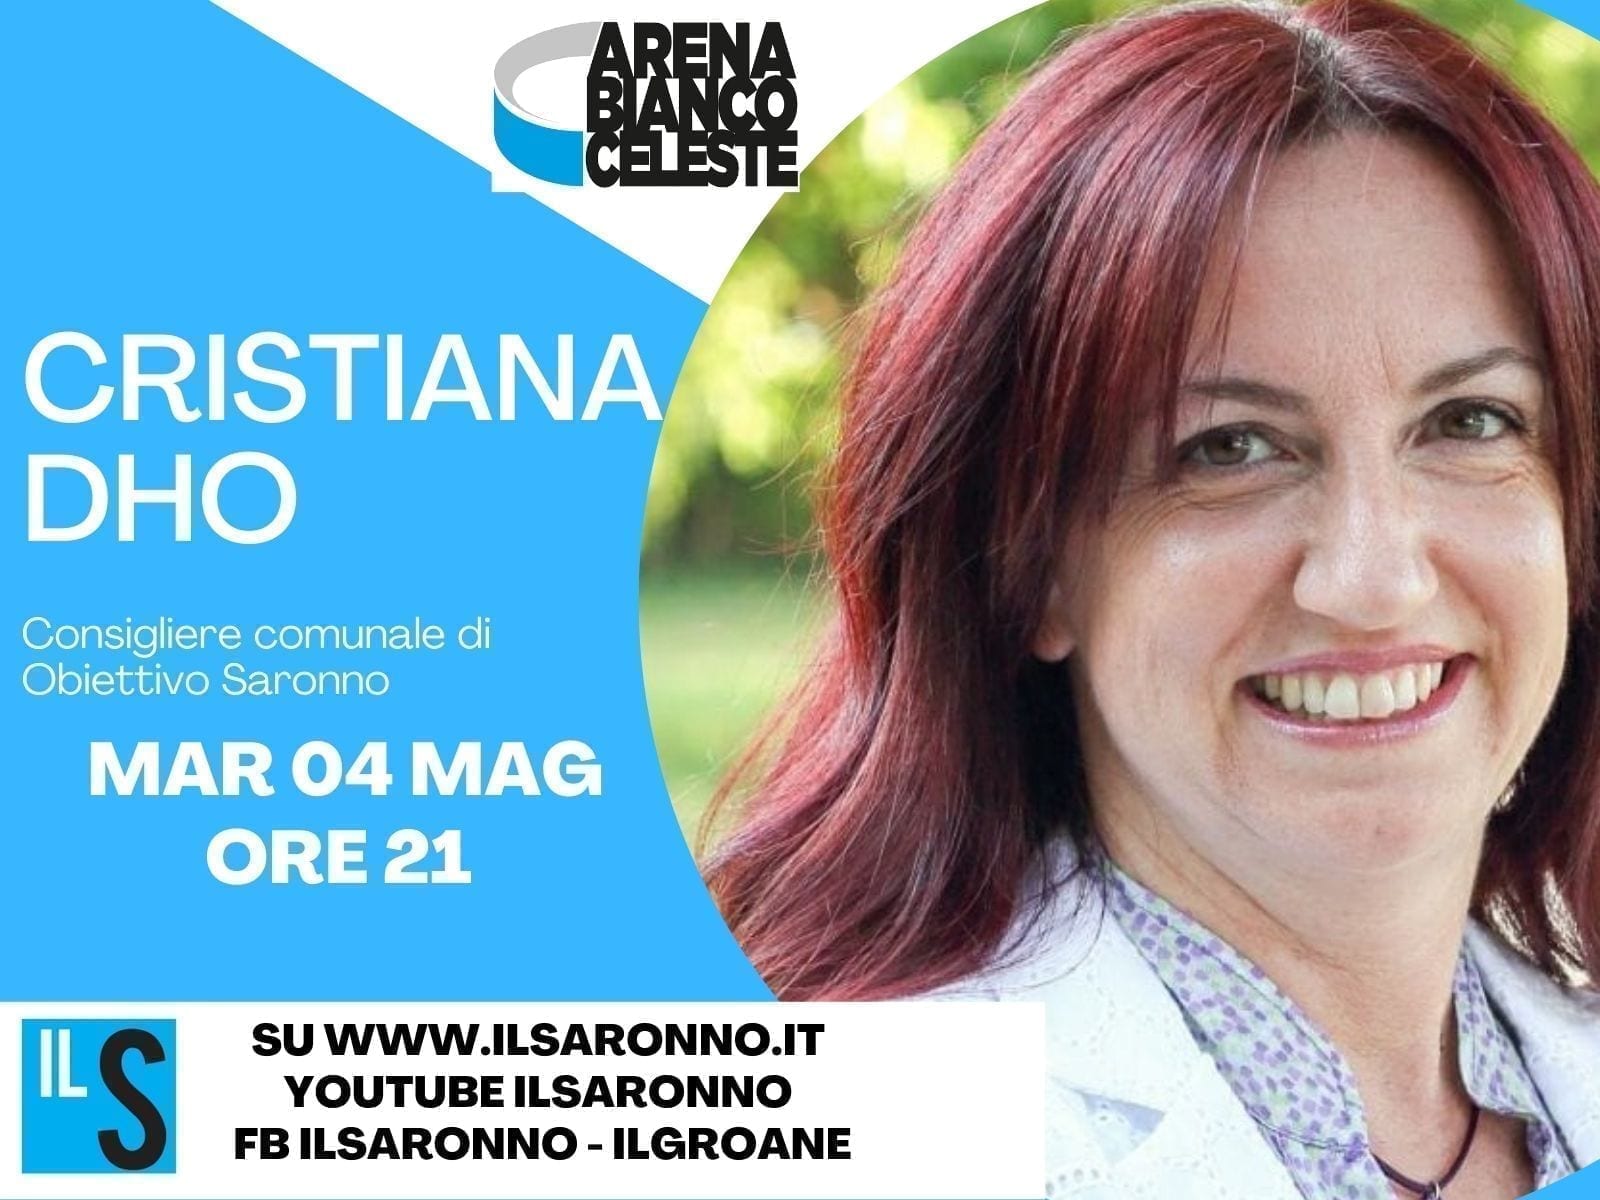 Cristiana Dho (Obiettivo Saronno) all’Arenabiancoceleste: in diretta alle 21